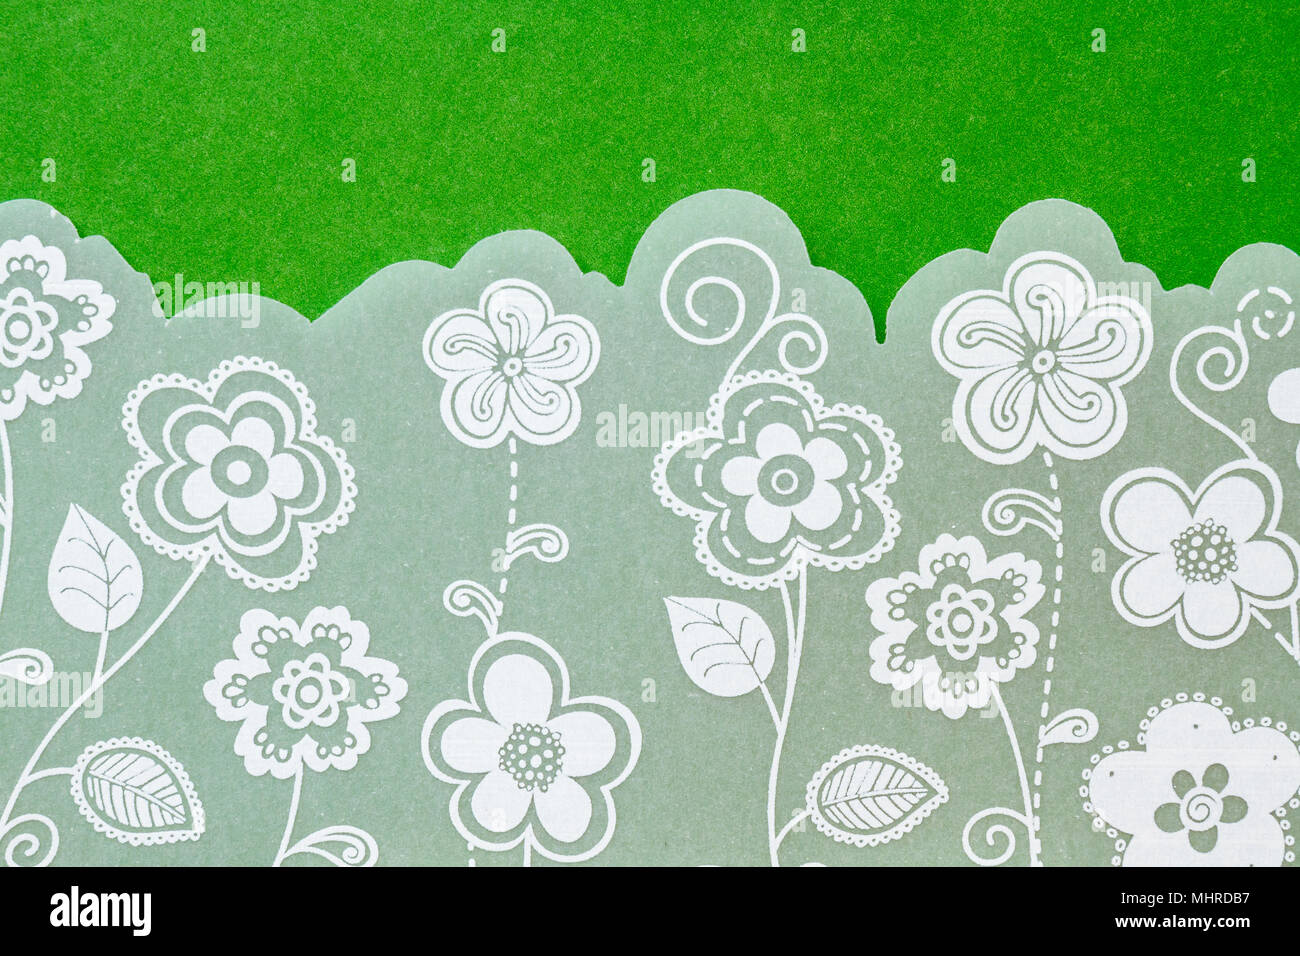 Weiß hochzeit einladung mit Blumen spitze Abbildung auf grünem Hintergrund. Close-up Horizontale erschossen. nette und schöne Elemente. Stockfoto